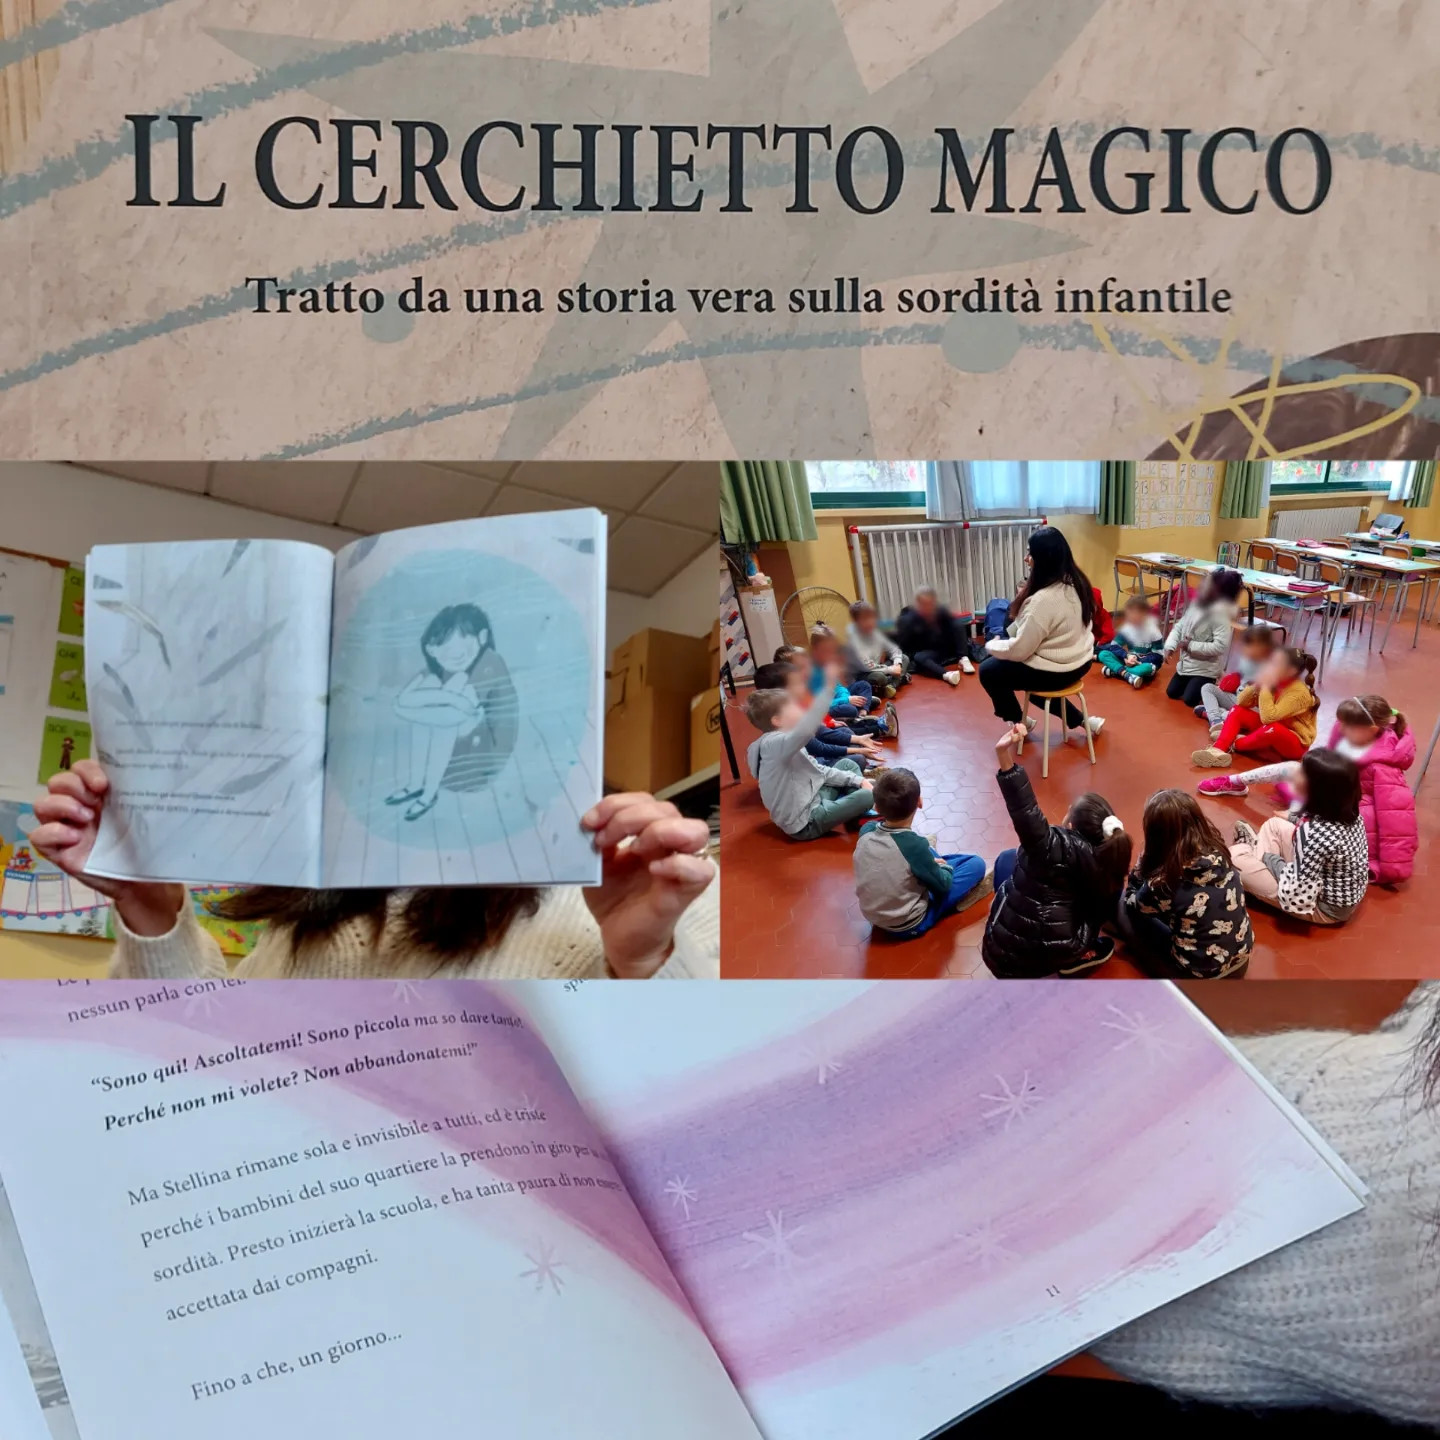 Il libro "Il Cerchietto Magico" aperto in mano a un alunno con sullo sfondo una classe con bambini durante una lettura animata